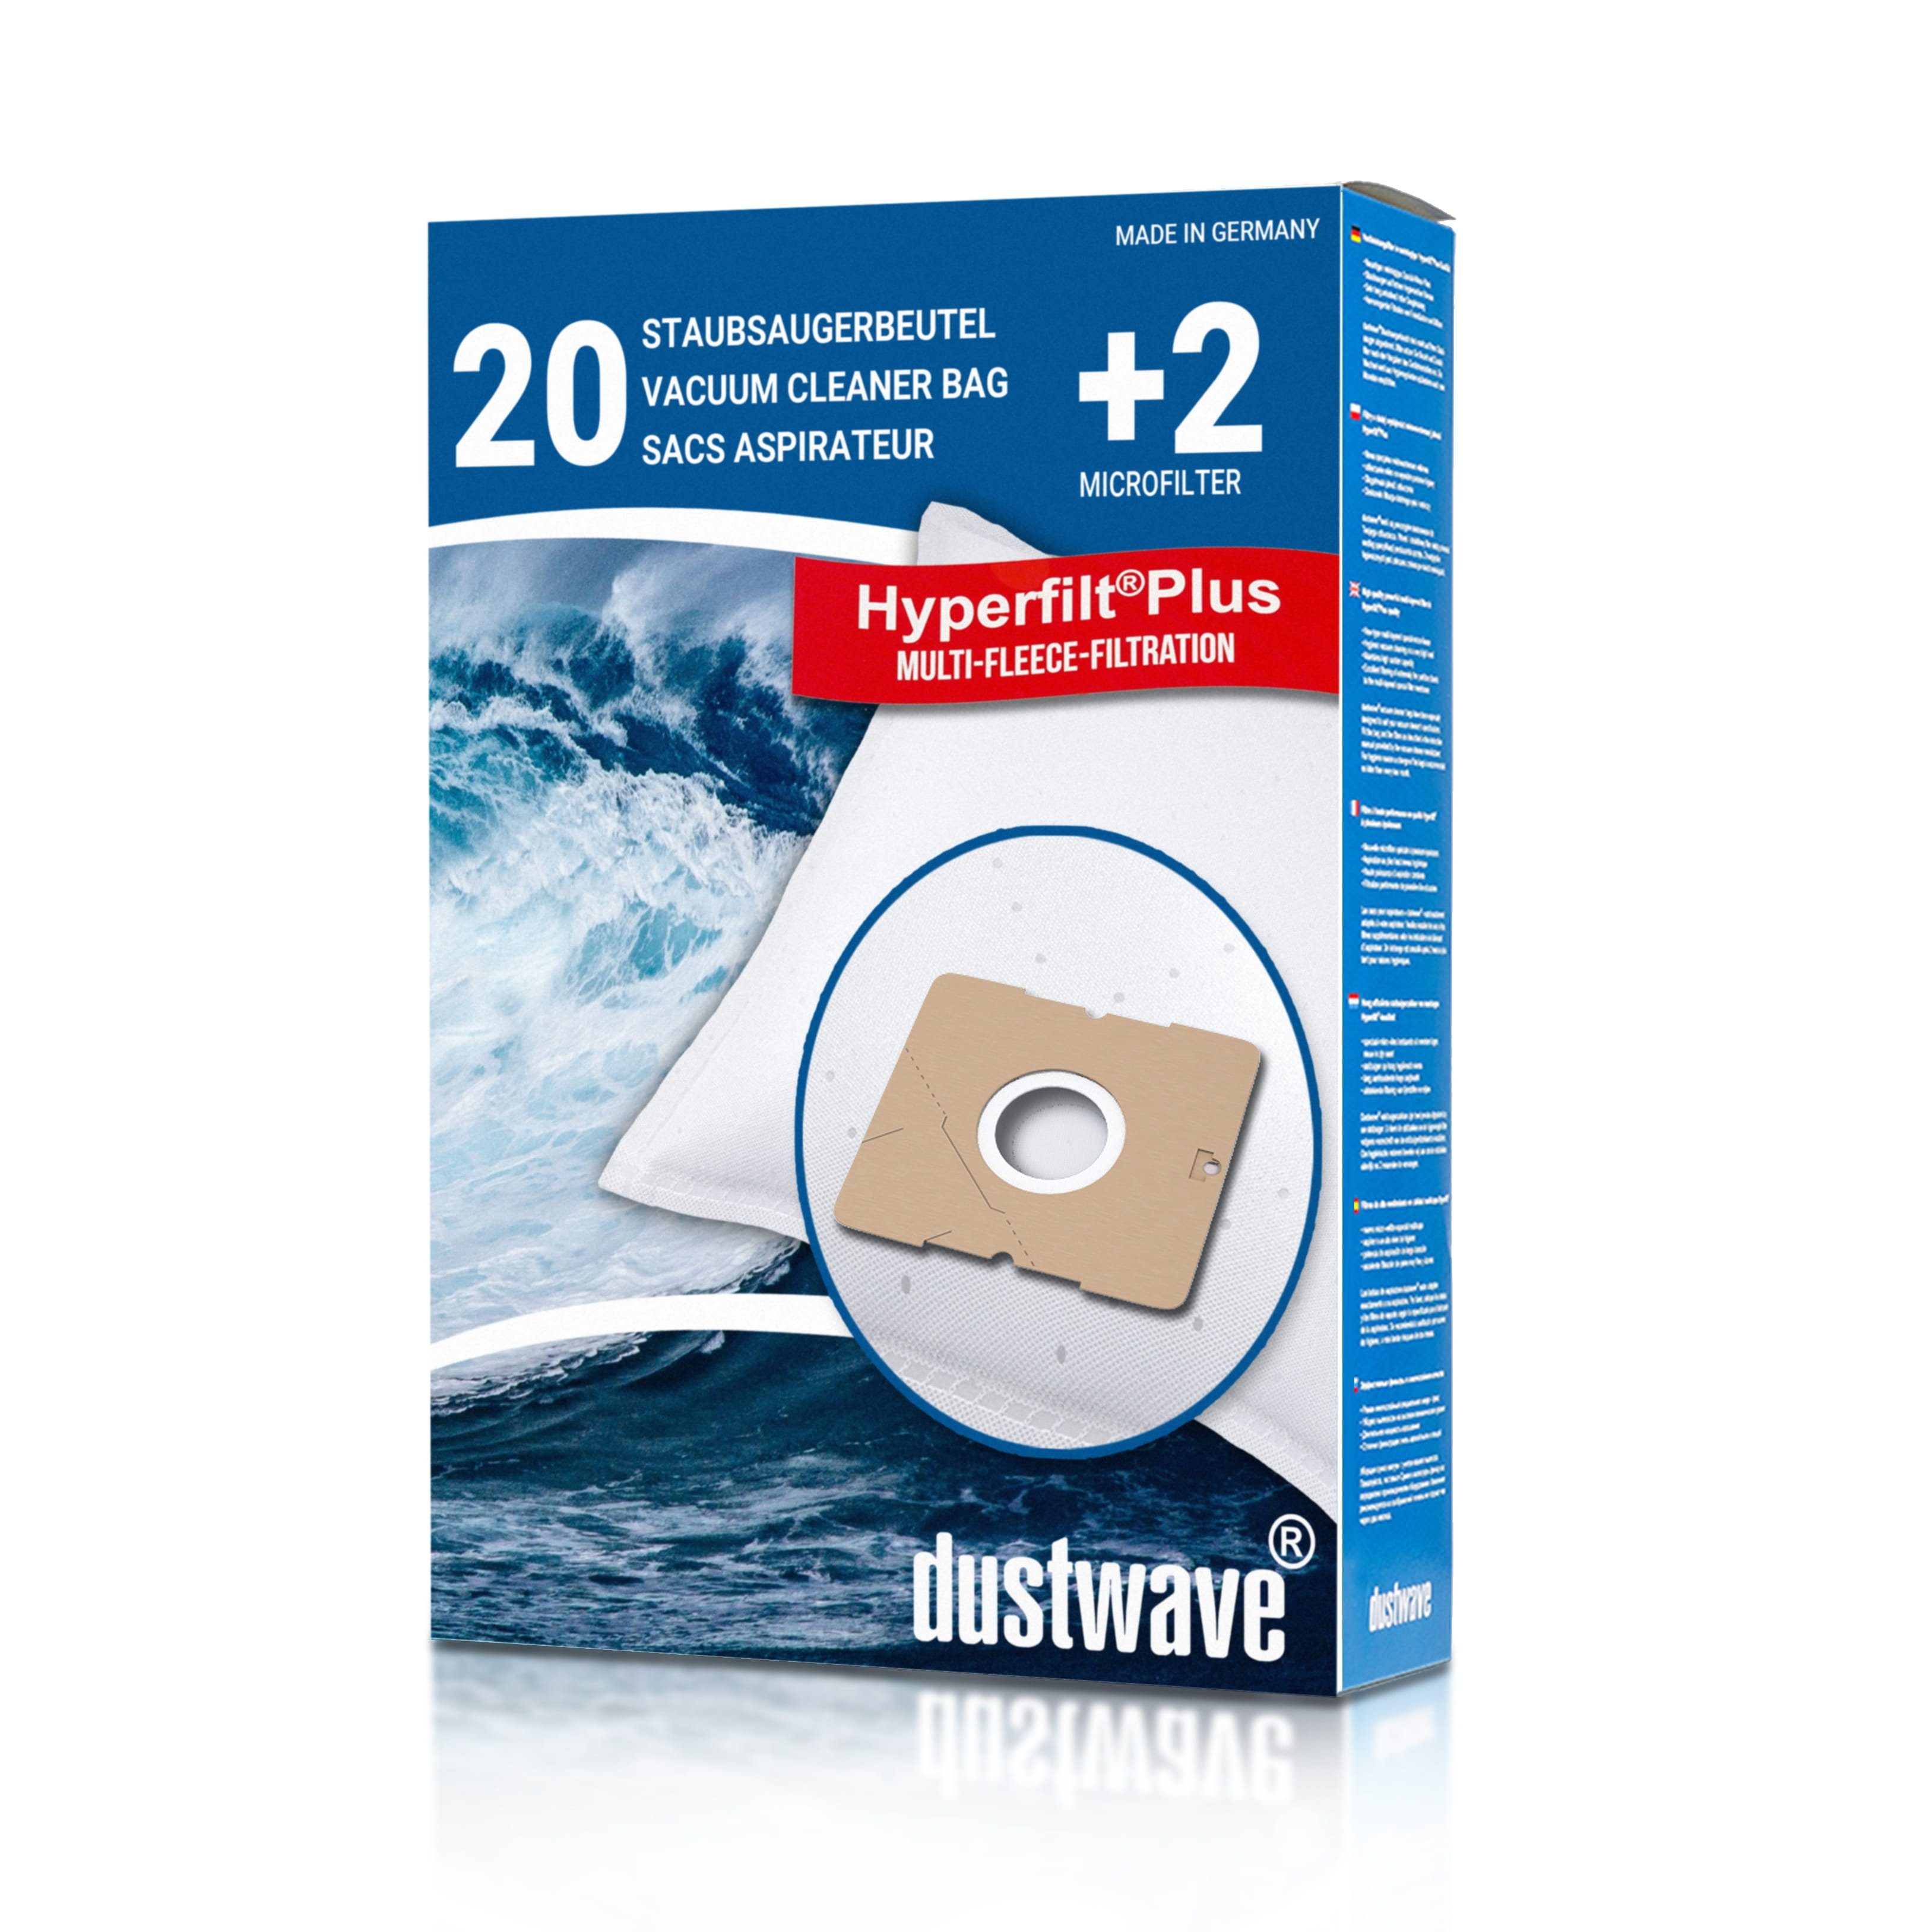 20 20 für Hepa-Filter - AmazonBasics Staubsaugerbeutel + 15x15cm zuschneidbar) Dustwave Megapack, St., Megapack, 2 (ca. Staubsaugerbeutel passend W31,